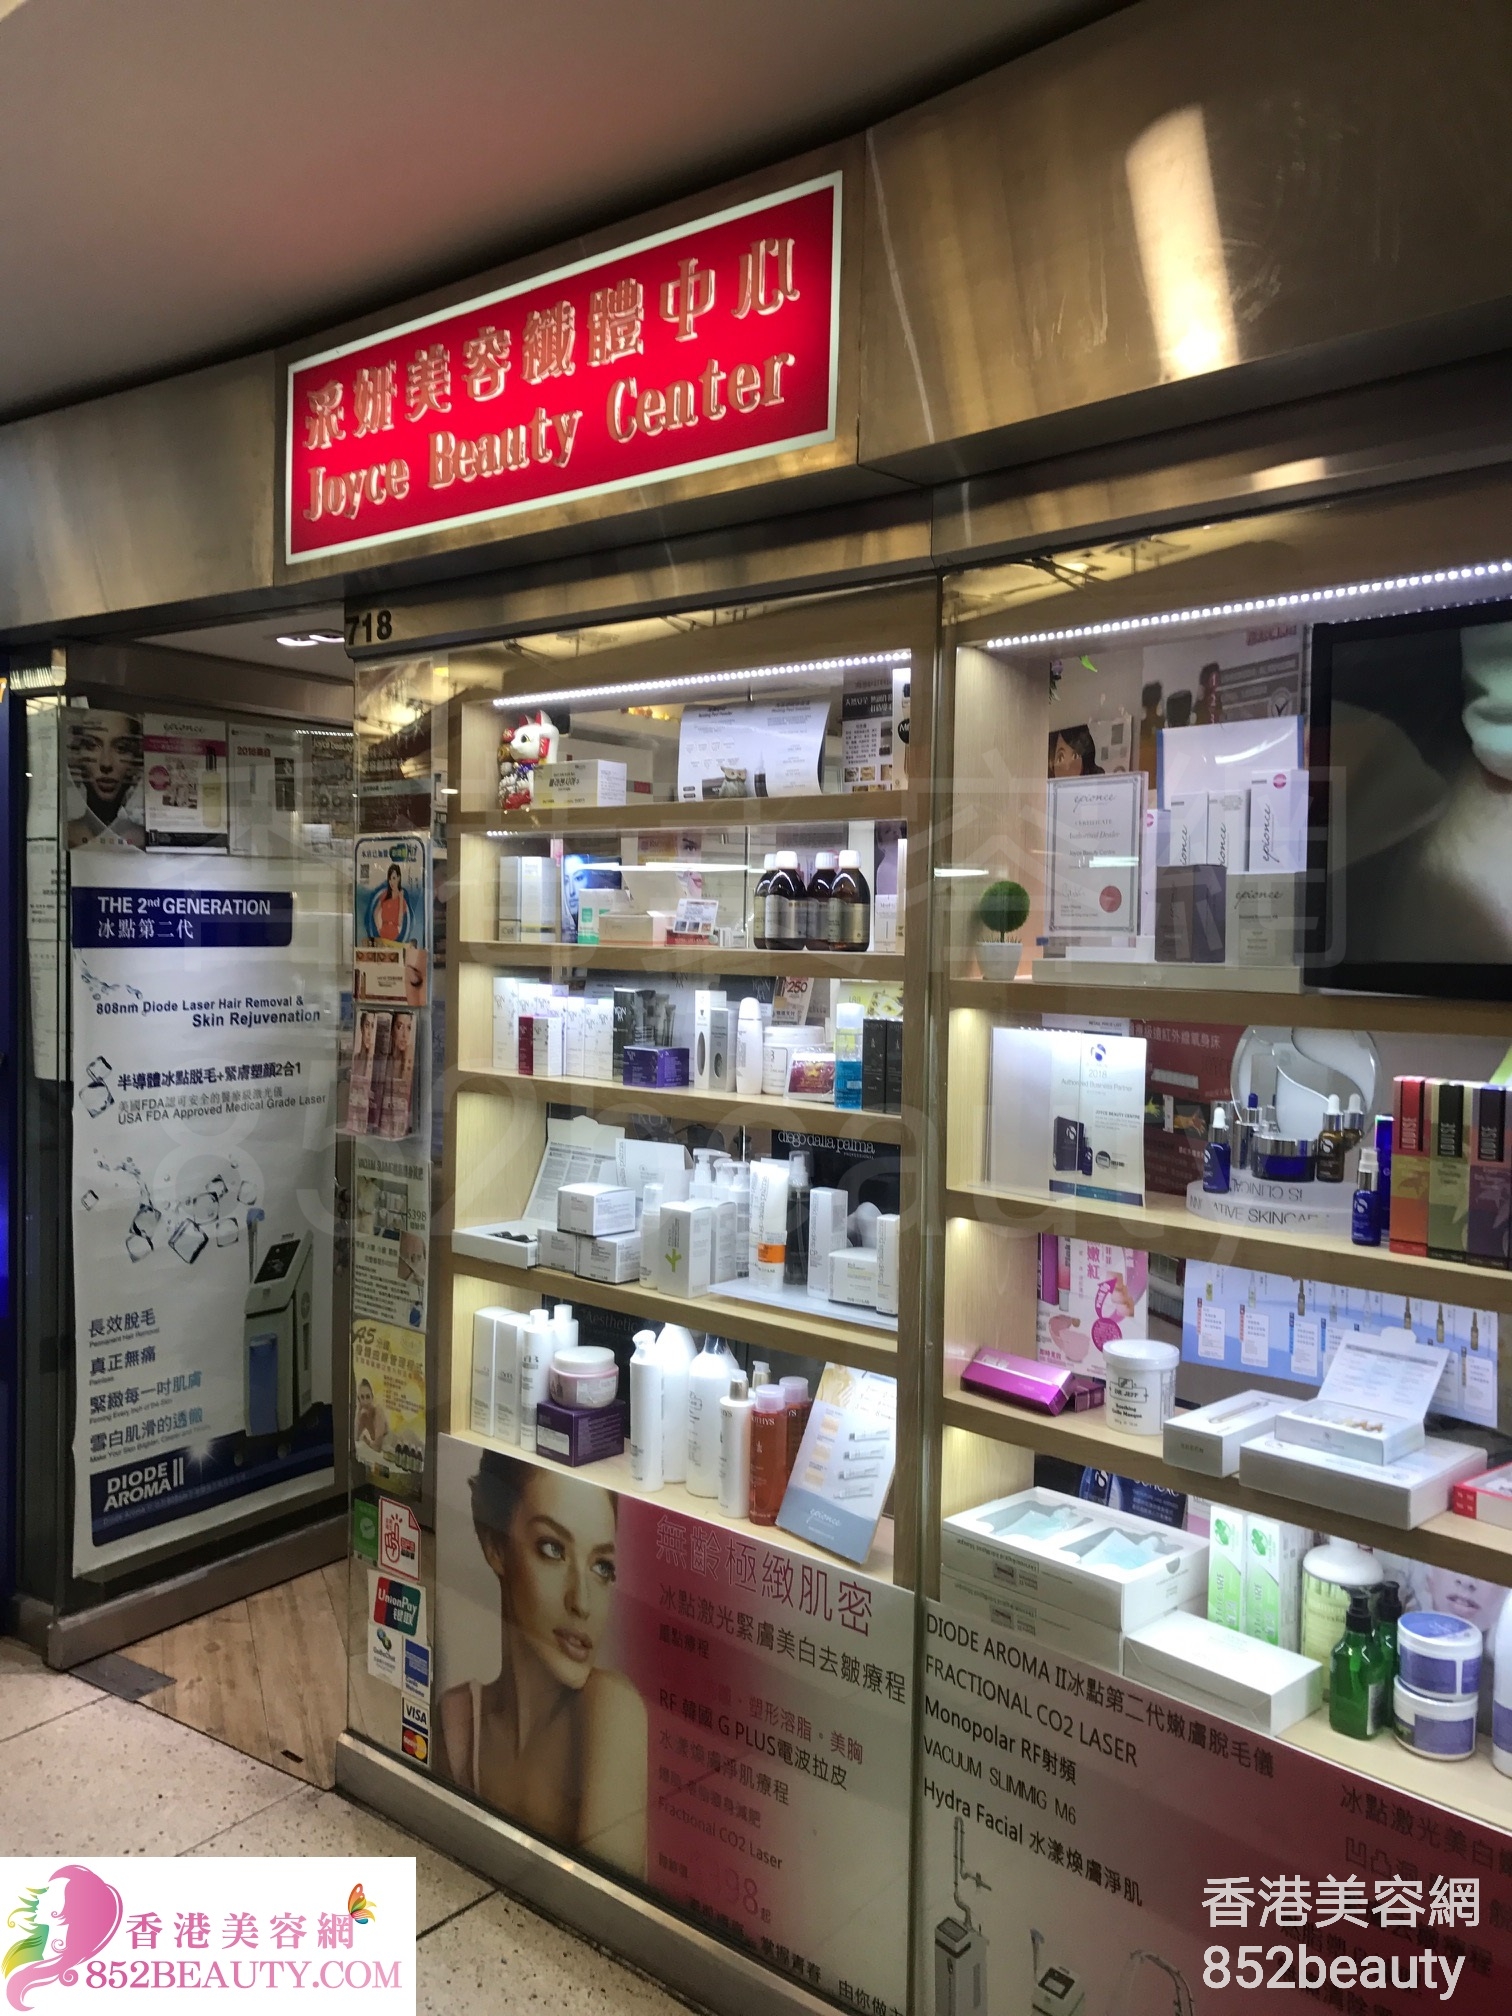 光学美容: 采妍美容纖體中心 Joyce Beauty Center (西九龍中心)